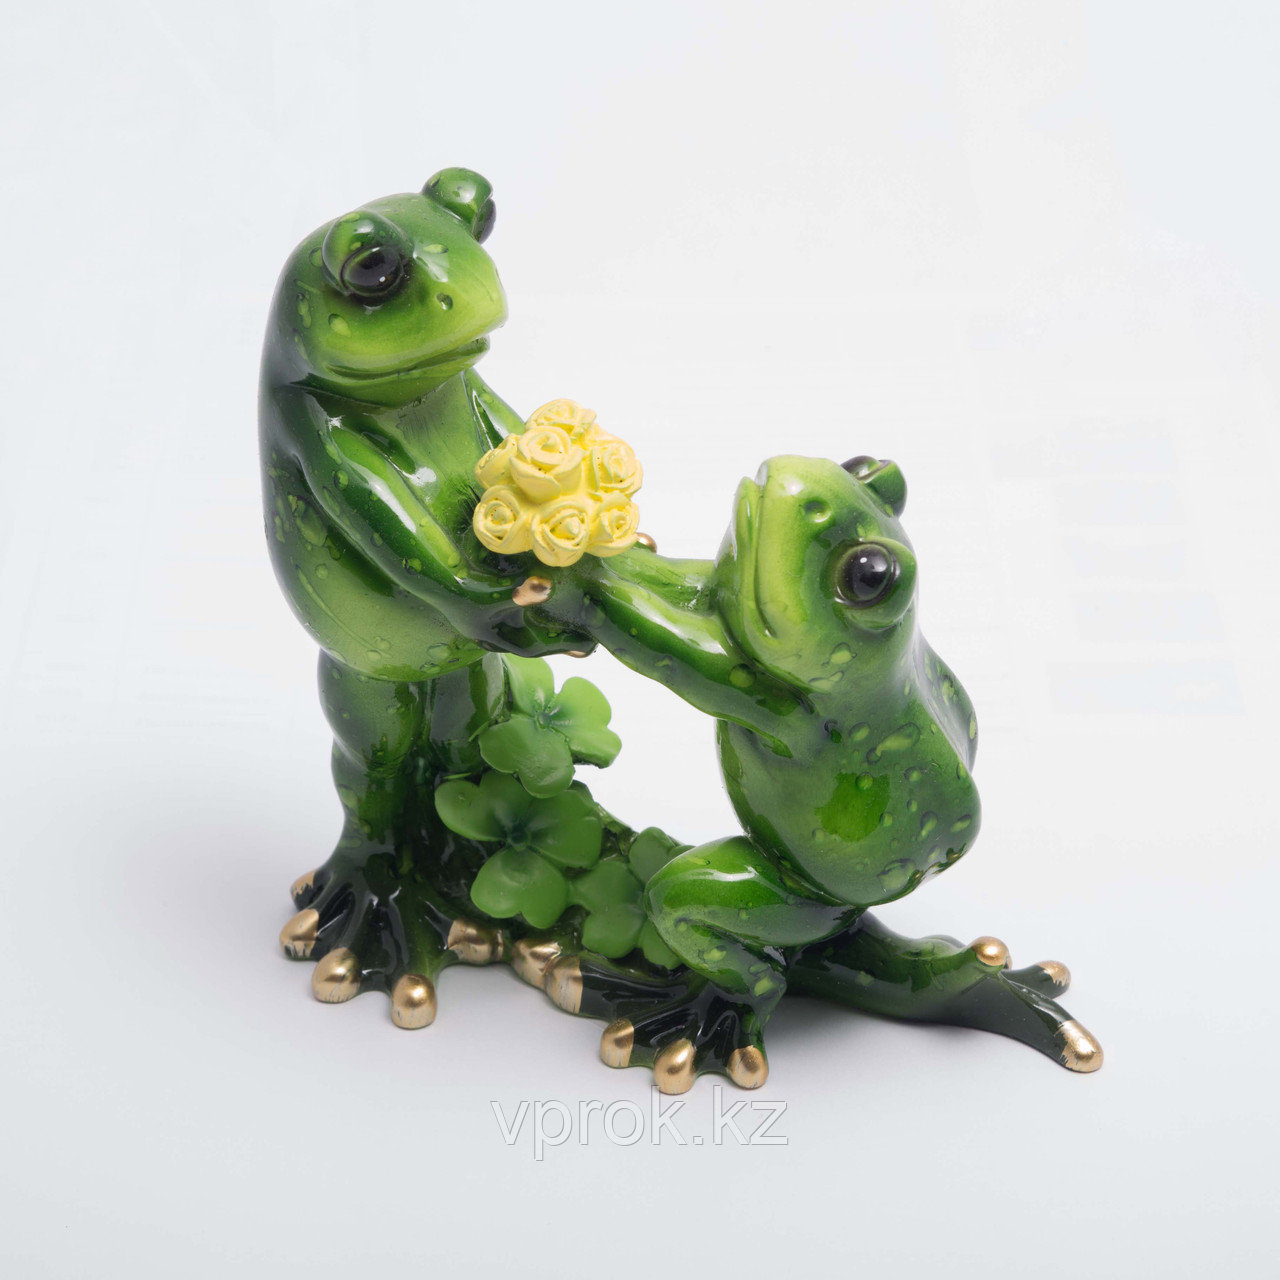 Статуэтка керамическая "Влюбленные лягушки" 11*8 см